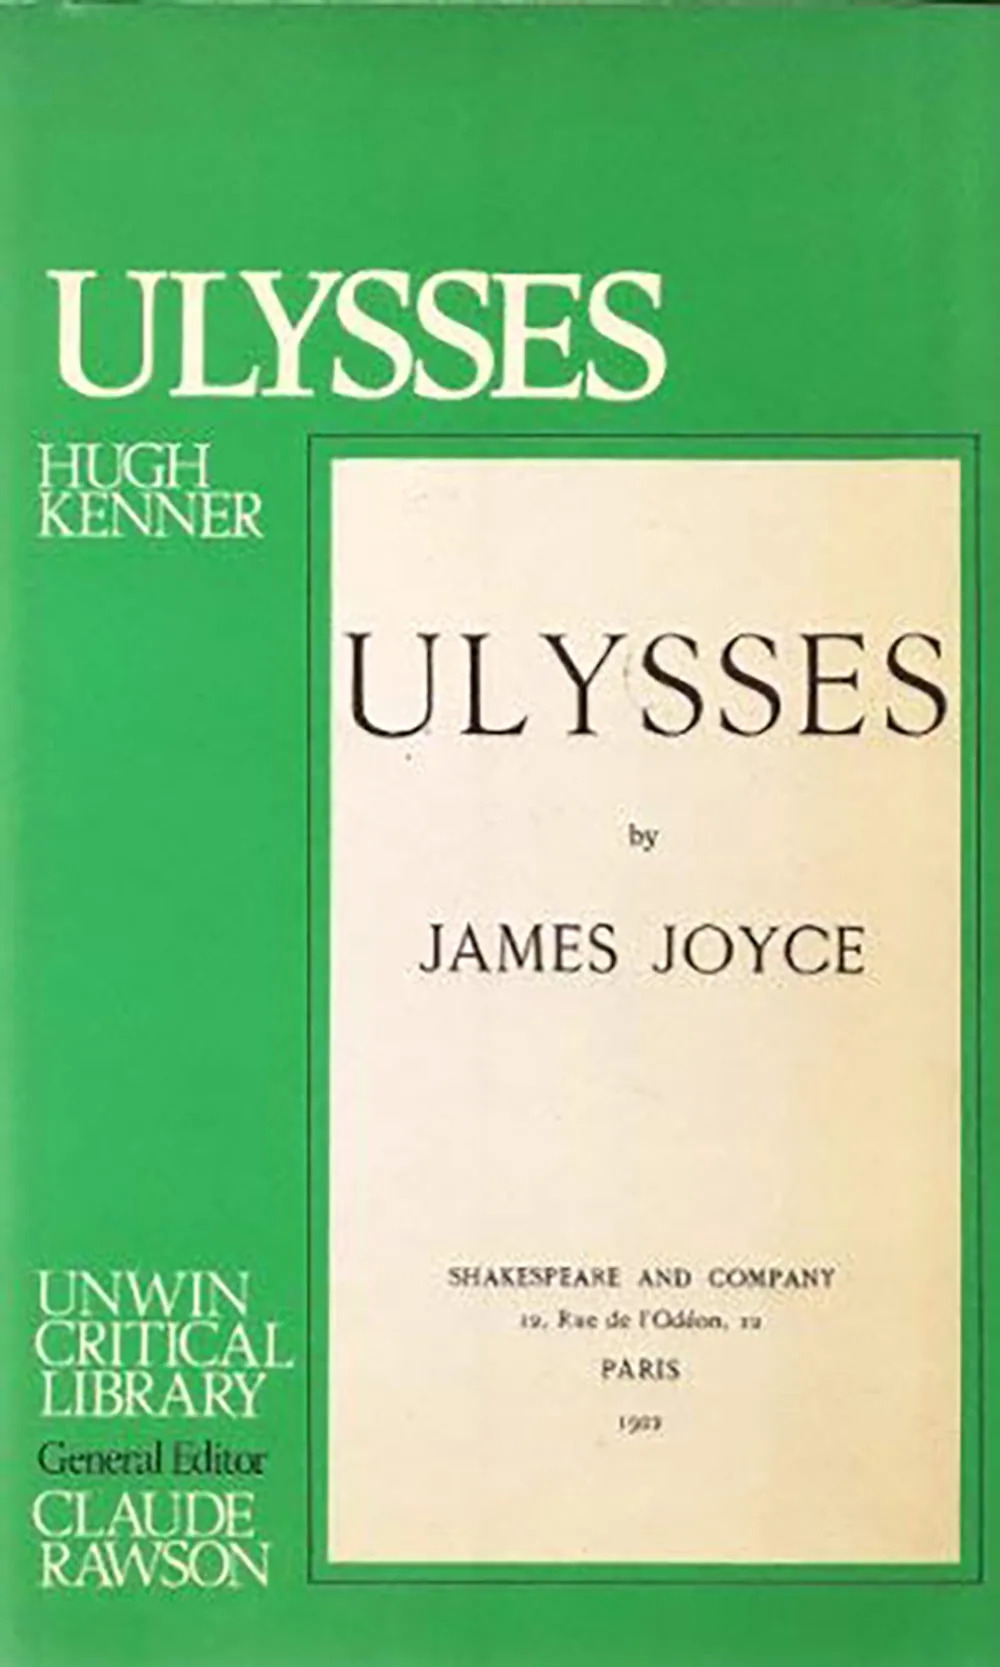 Ulysses by Hugh Kenner